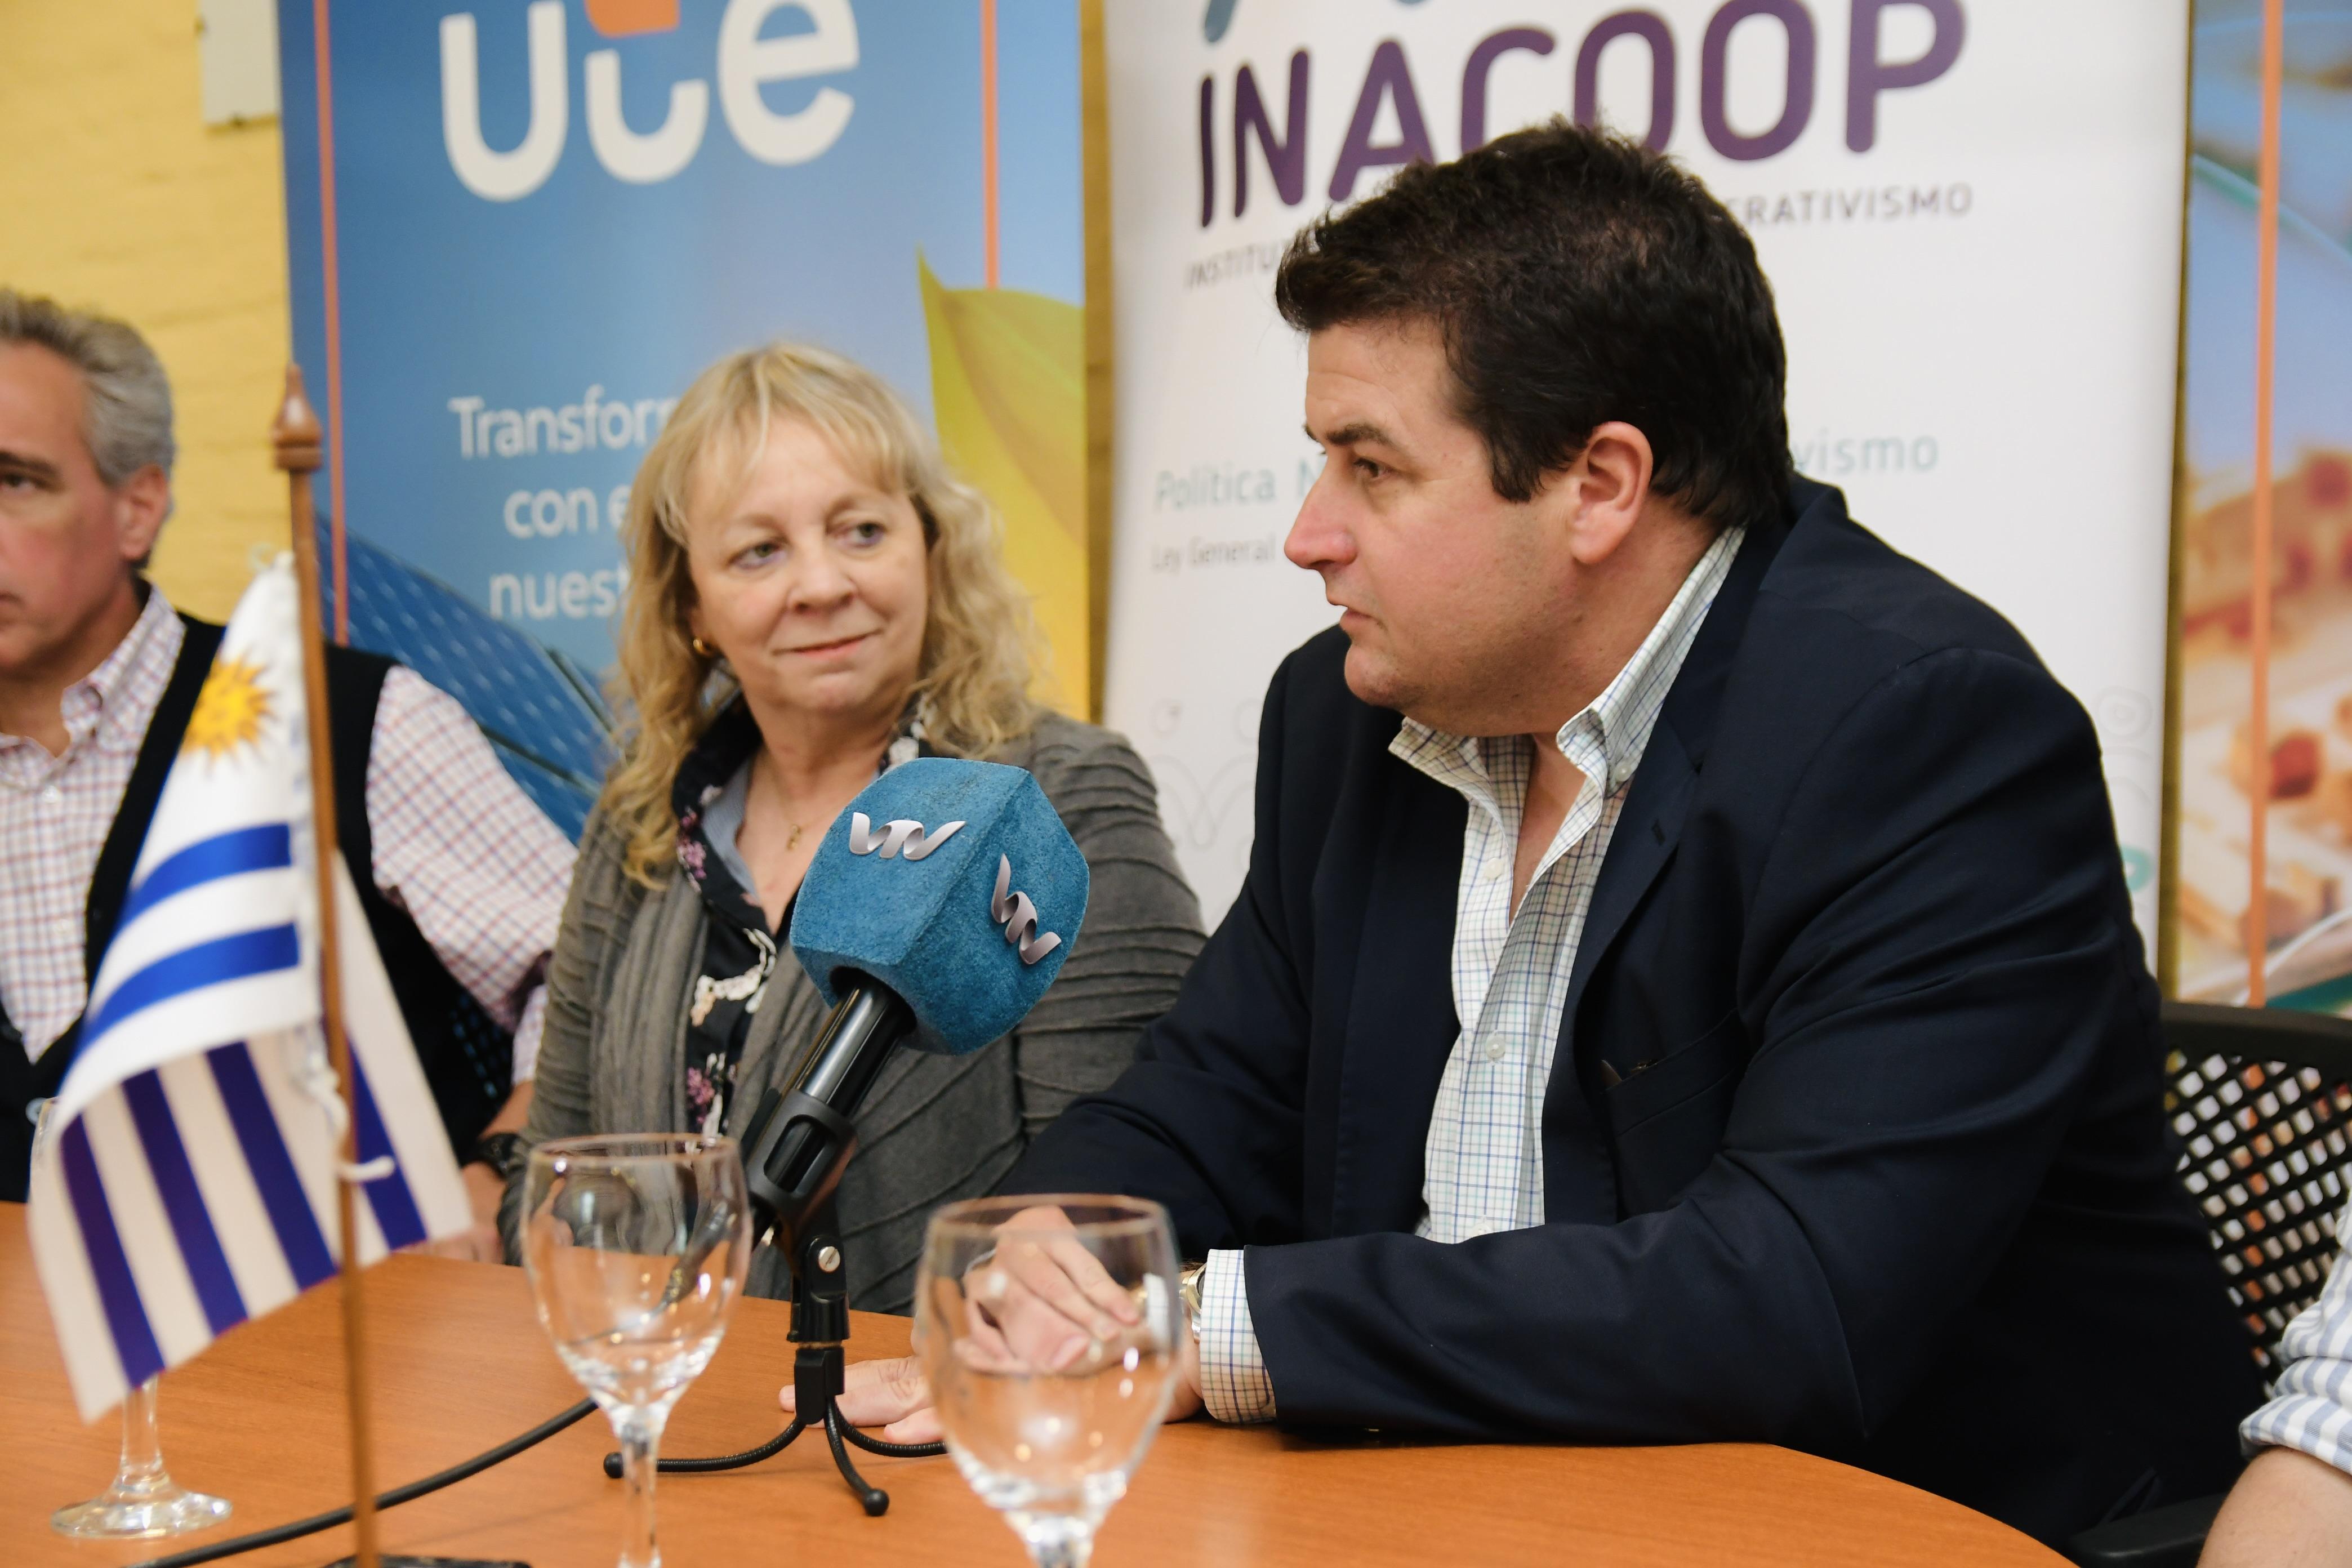 Presidenta de UTE Silvia Emaldi junto a Martín Fernández presidente de INACOOP